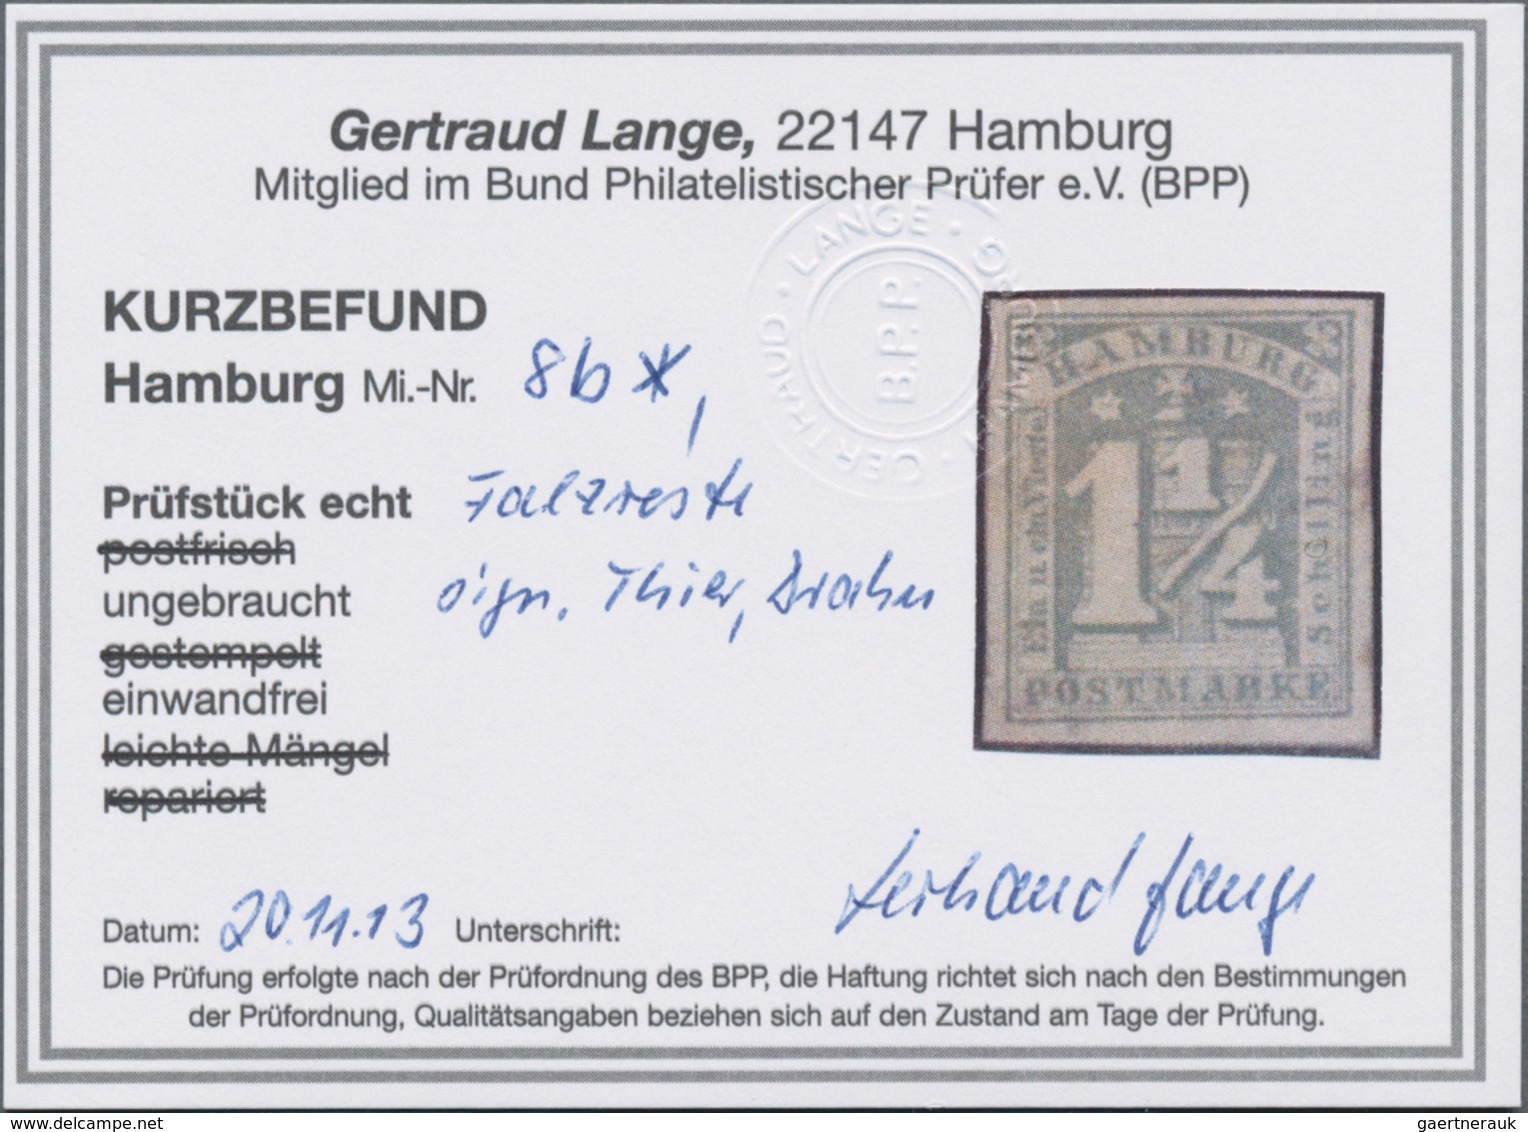 Hamburg - Marken und Briefe: 1859/1867, saubere, fast ausschließlich gestempelte Sammlung von 41 Mar